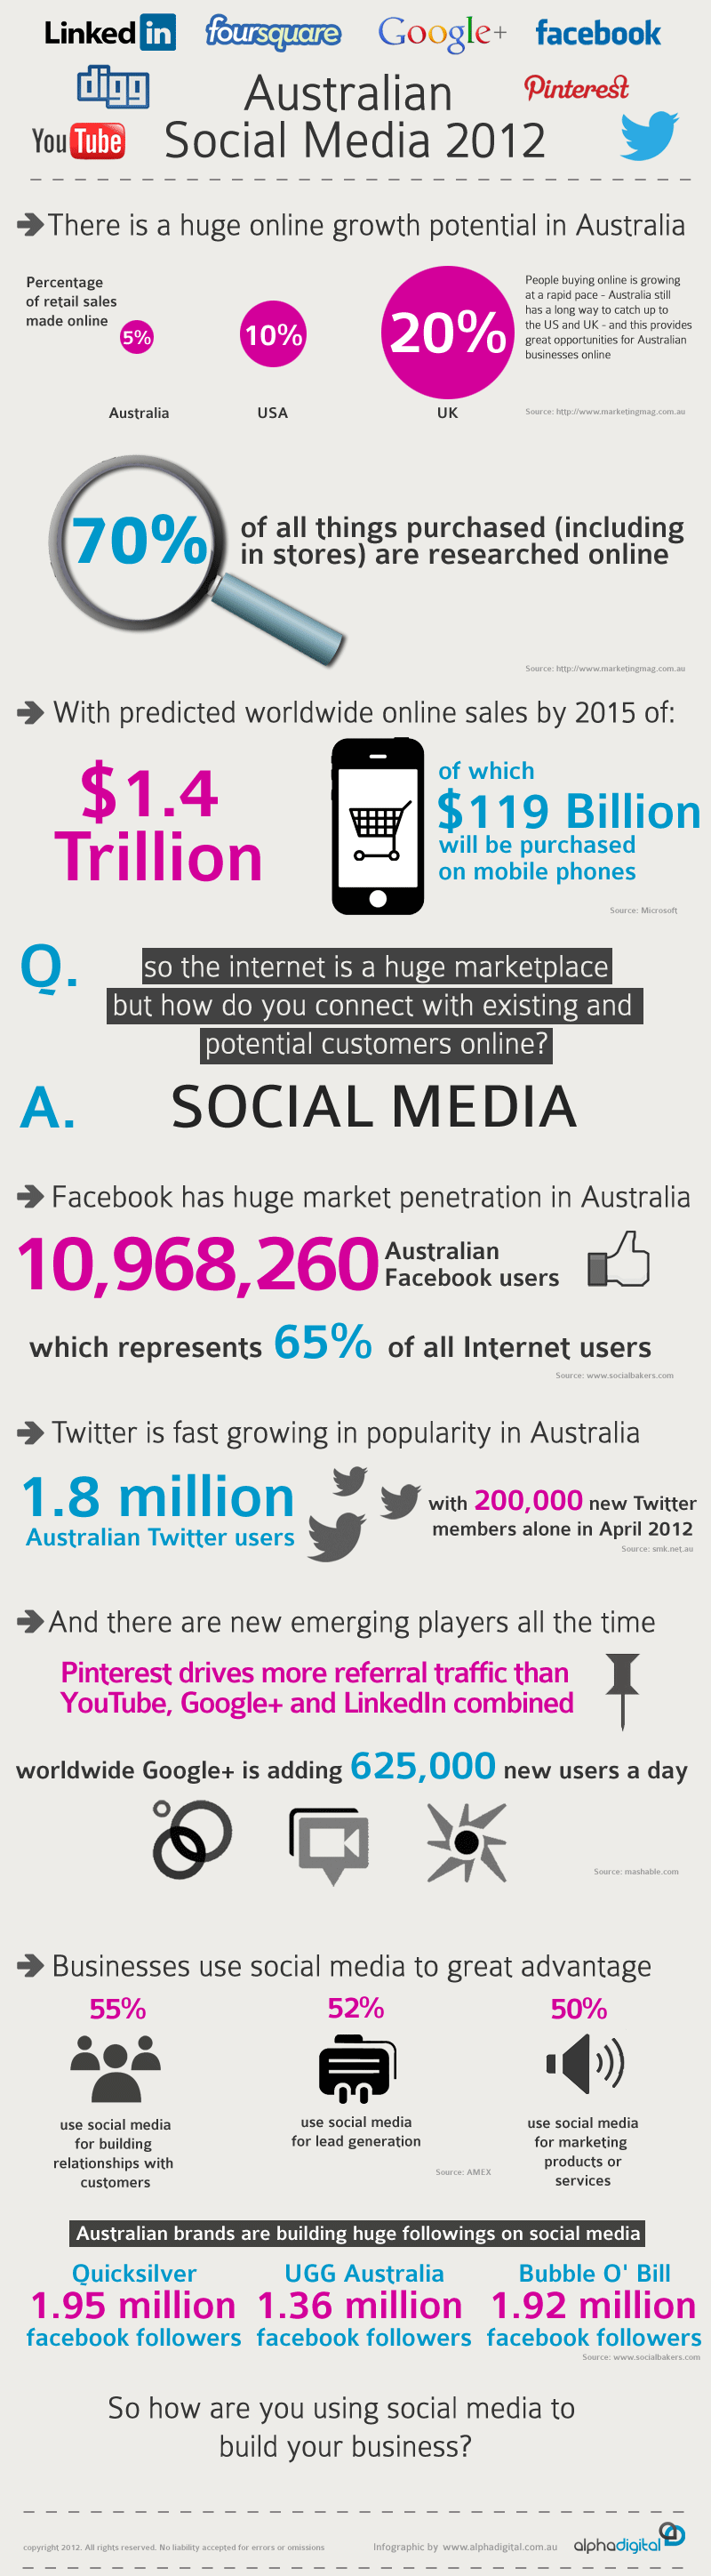 Social Media in Australia 2012 Infographic